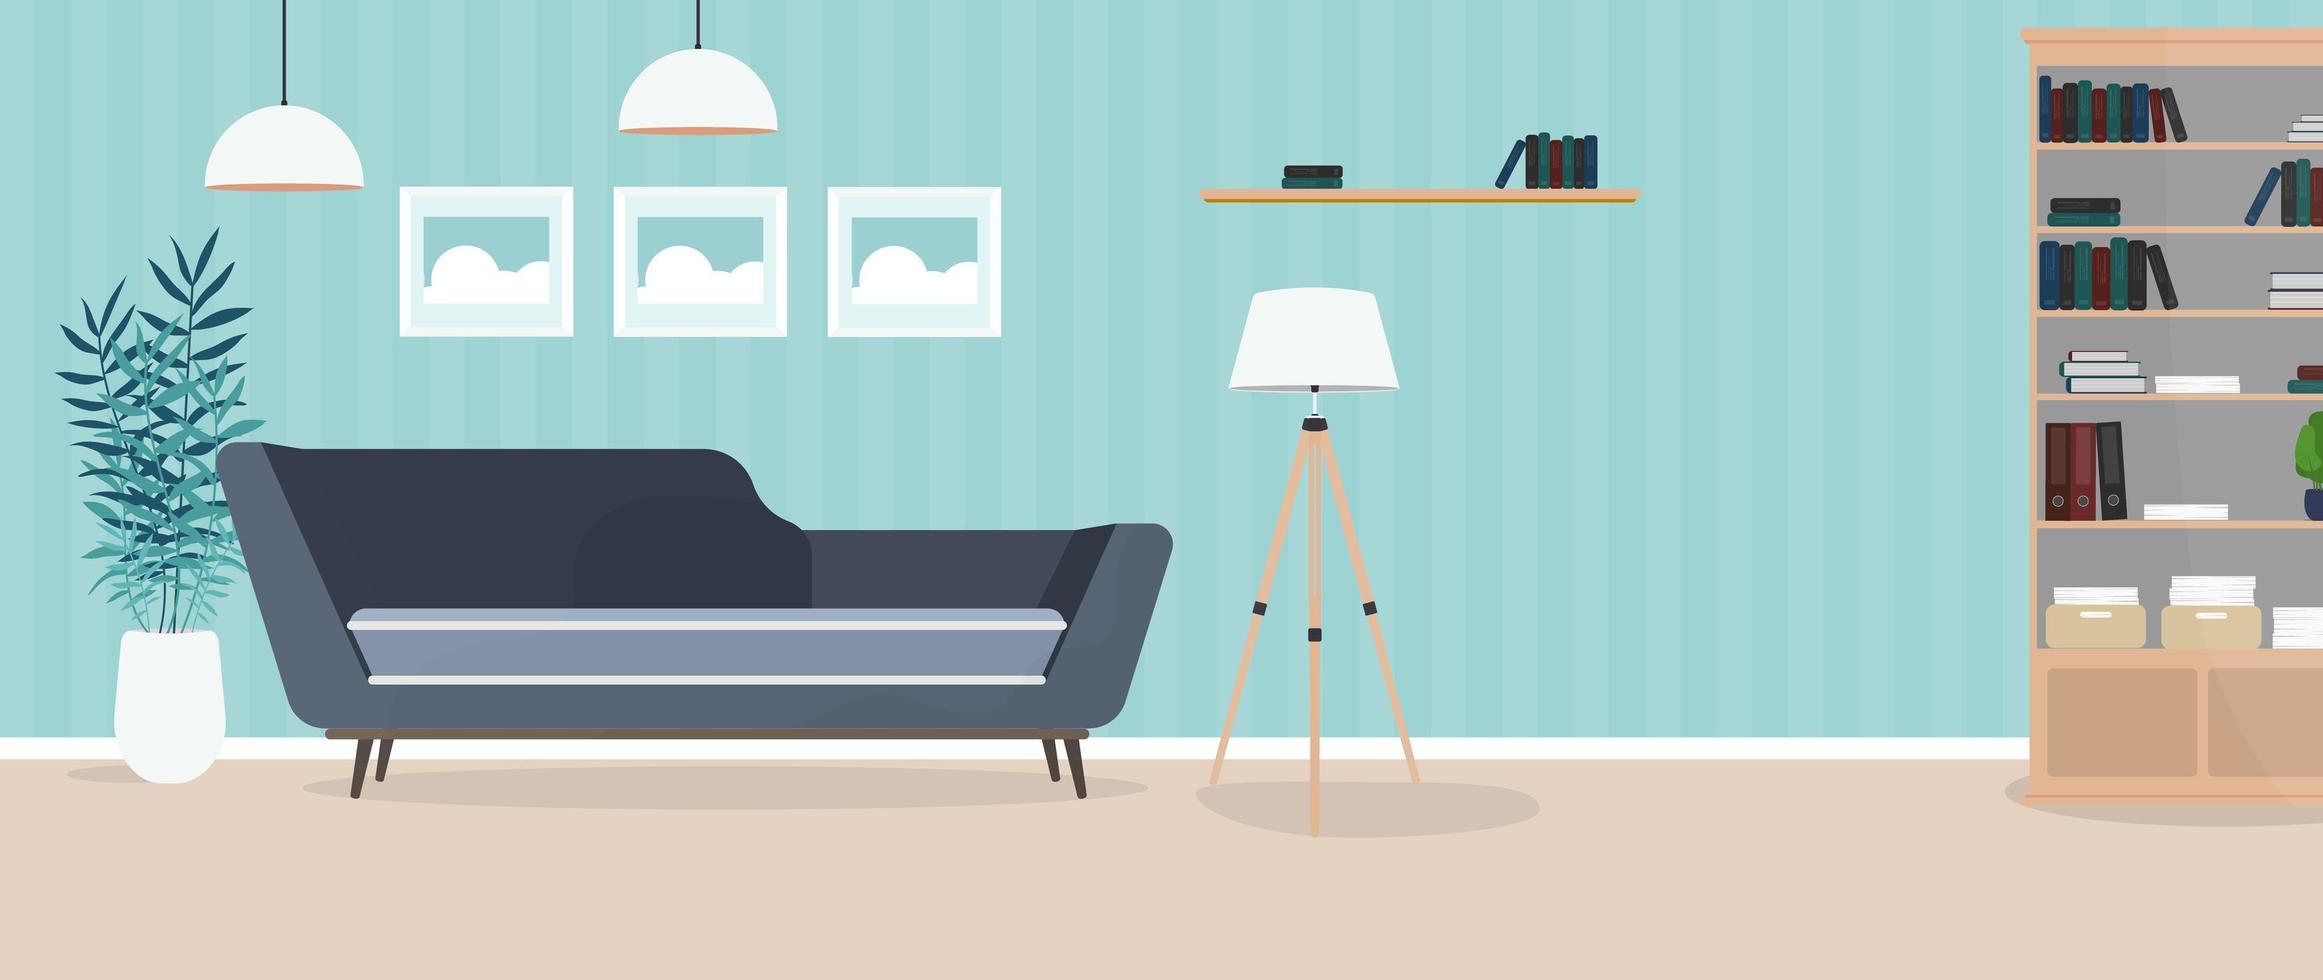 modernes helles Zimmer. Wohnzimmer mit Sofa, Kleiderschrank, Lampe, Gemälde. Möbel. Innere. Vektor. vektor